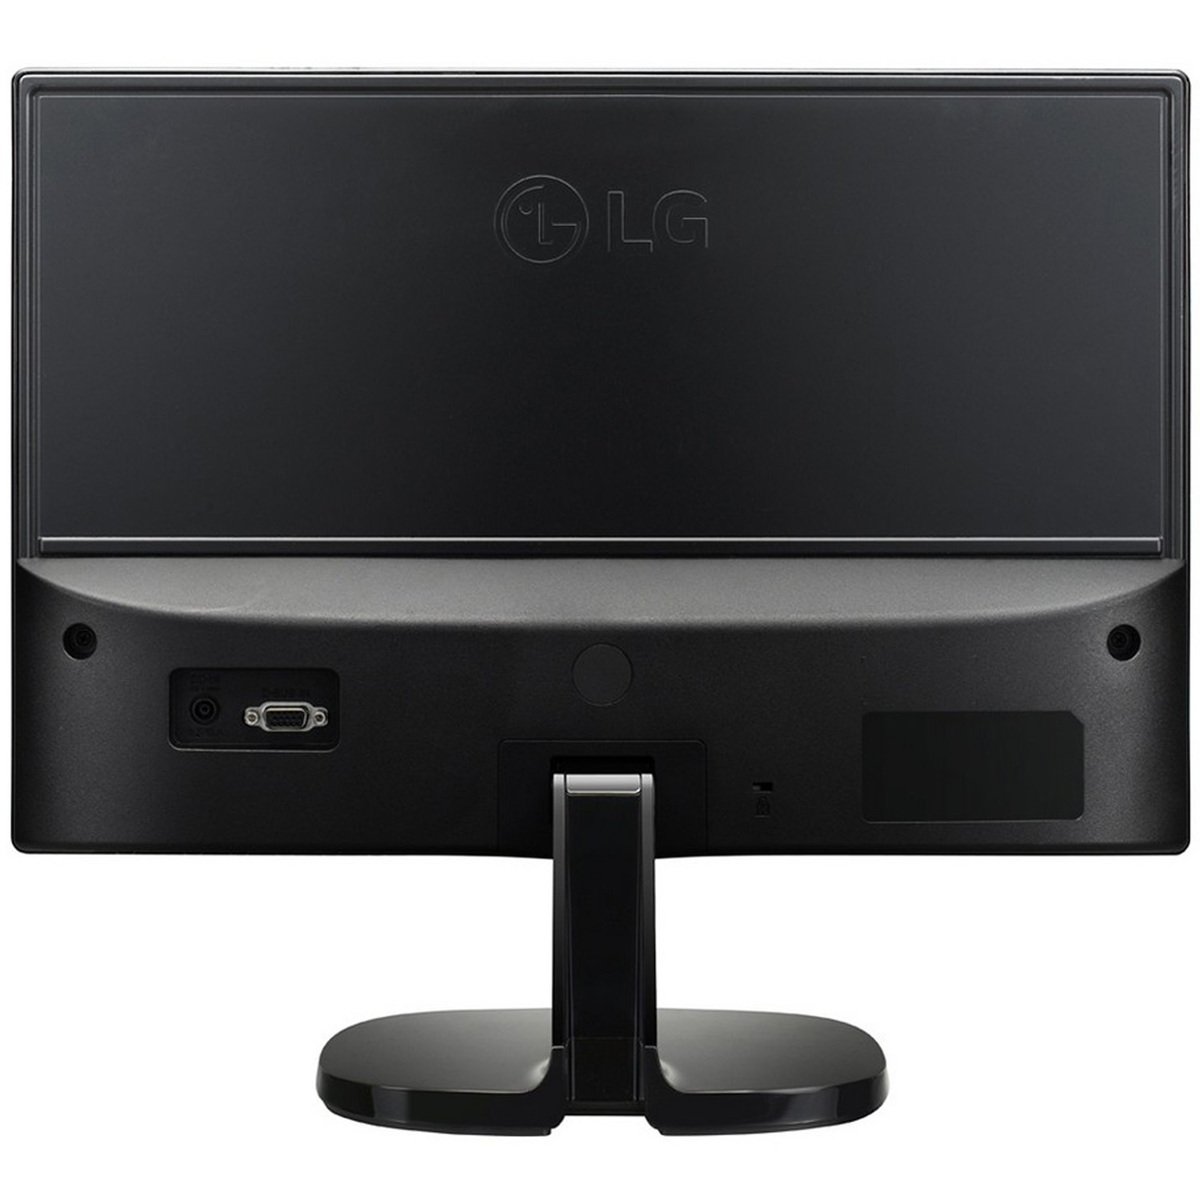 LG LED Monitor 20MP48A 19.5inch